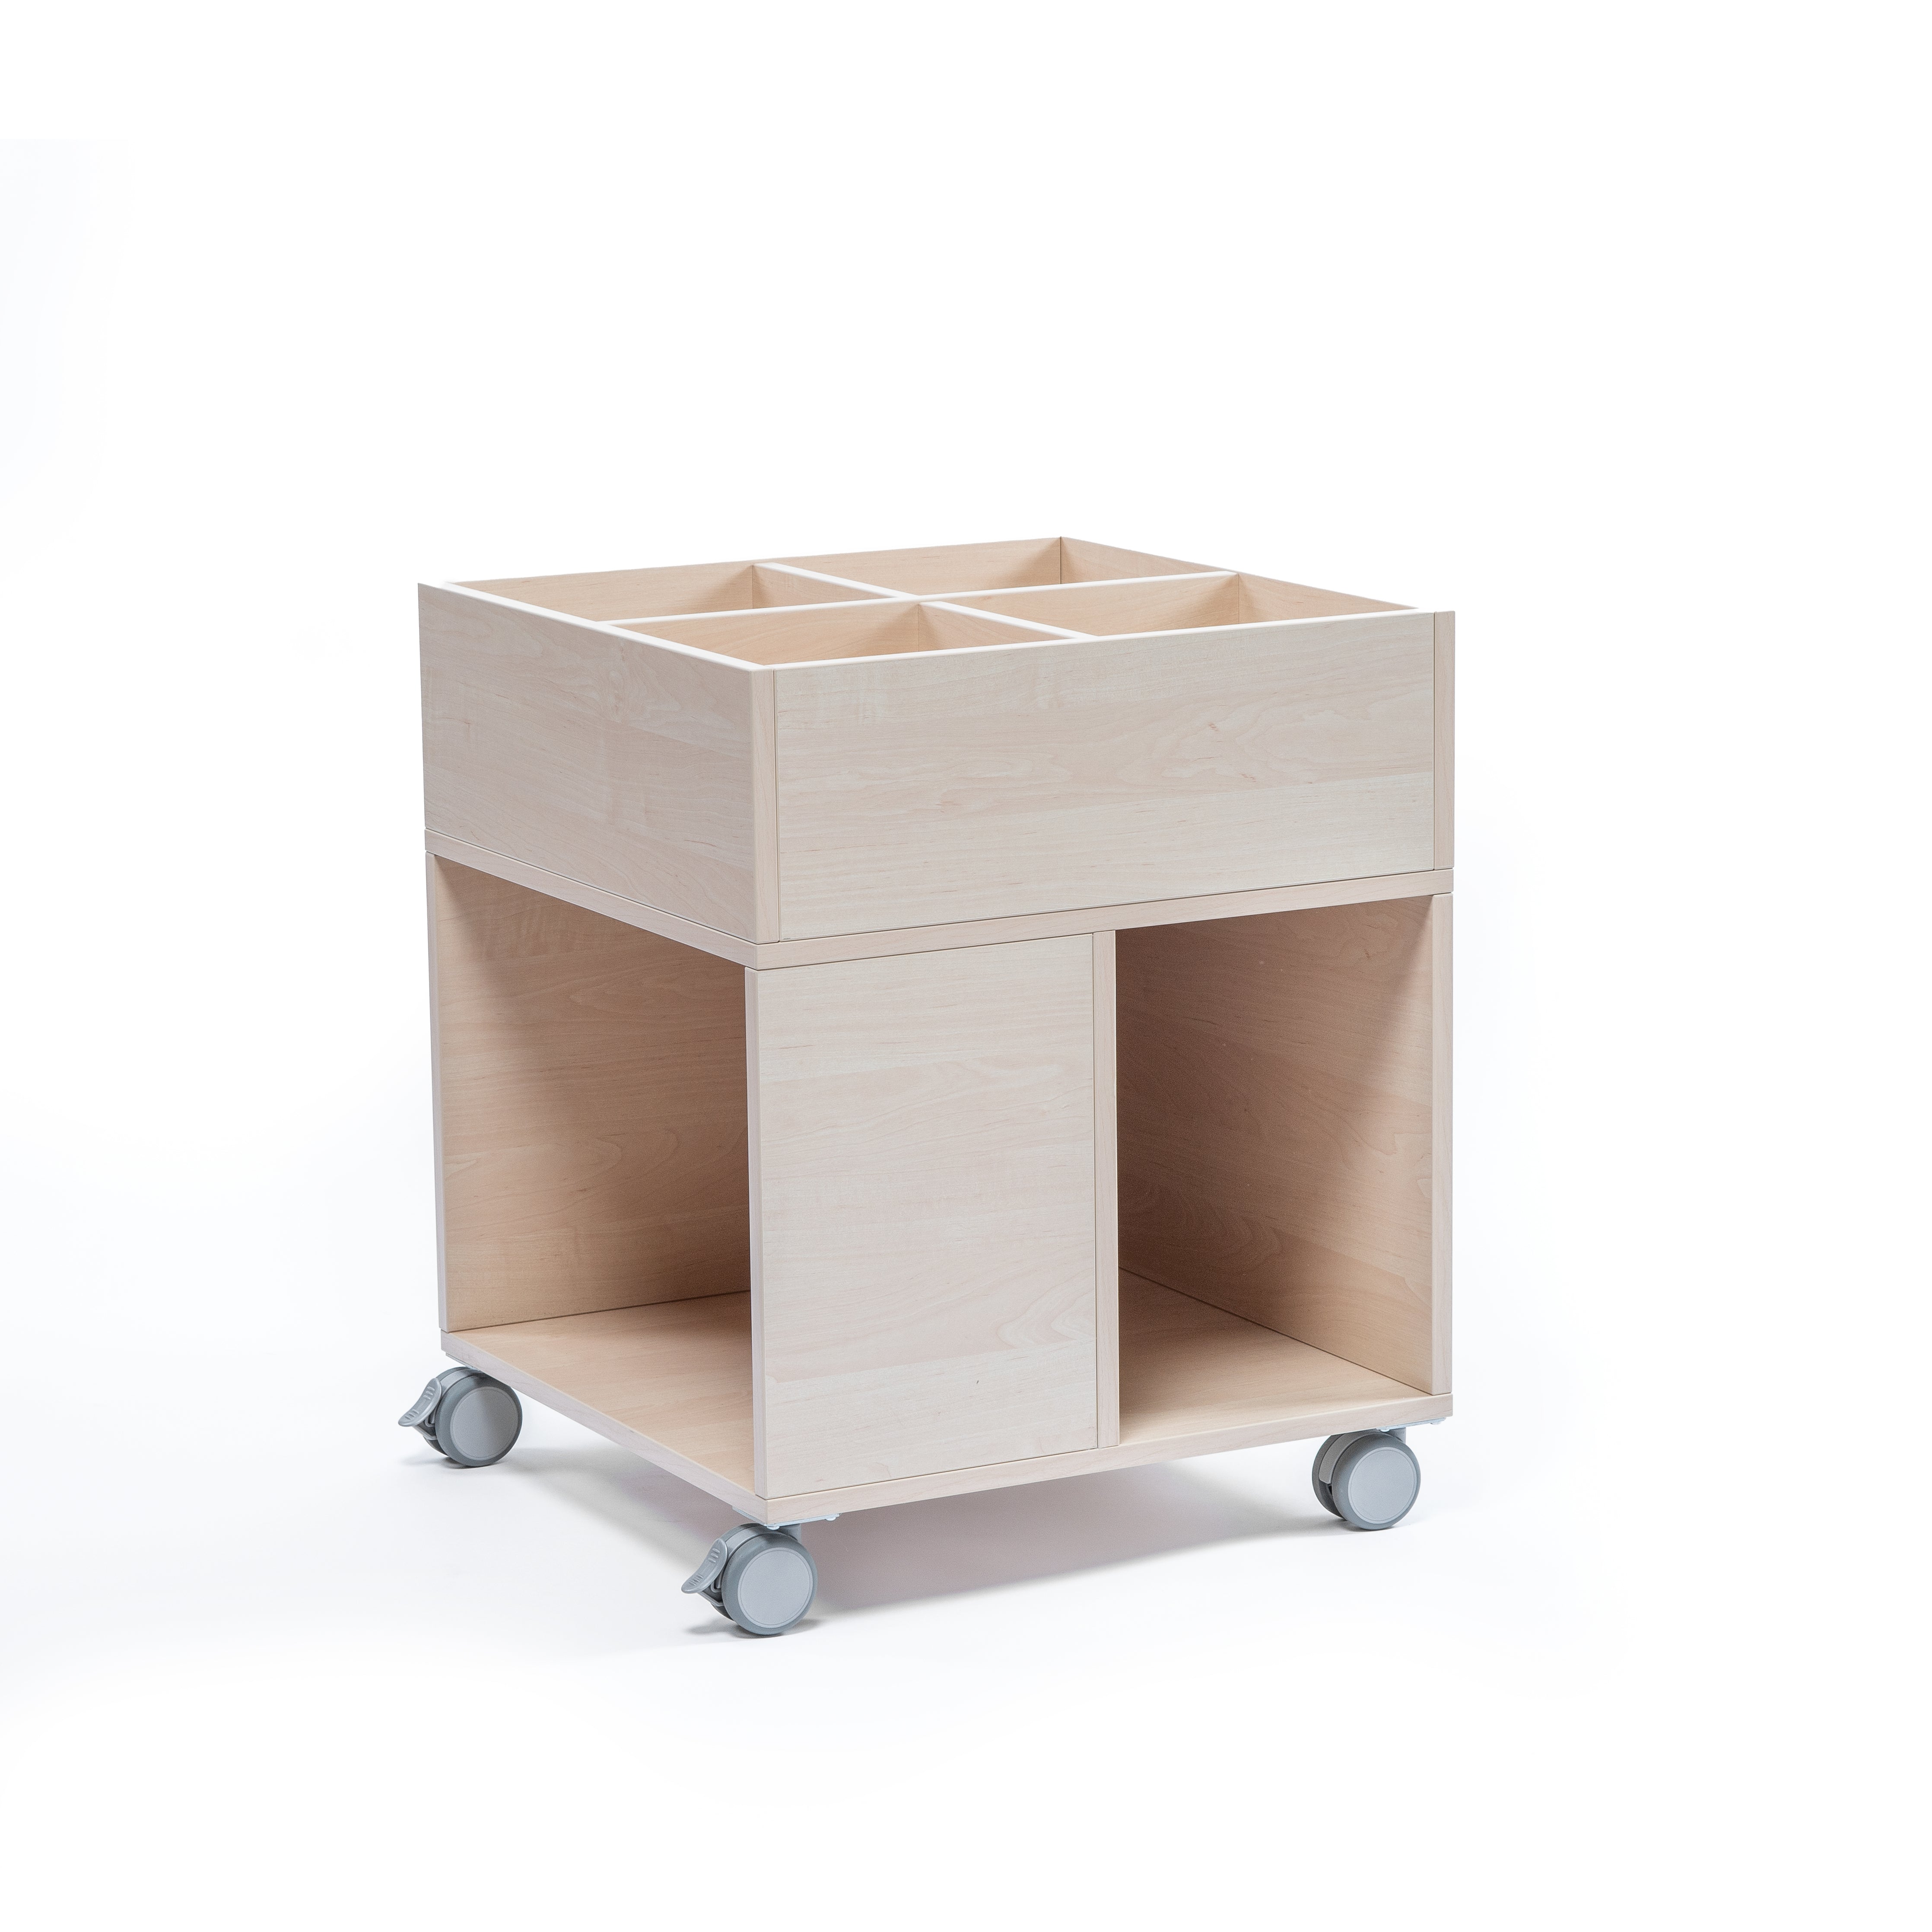 Bücherwagen auf Rollen aus hochwertigem Holz für Kita und Kindergarten